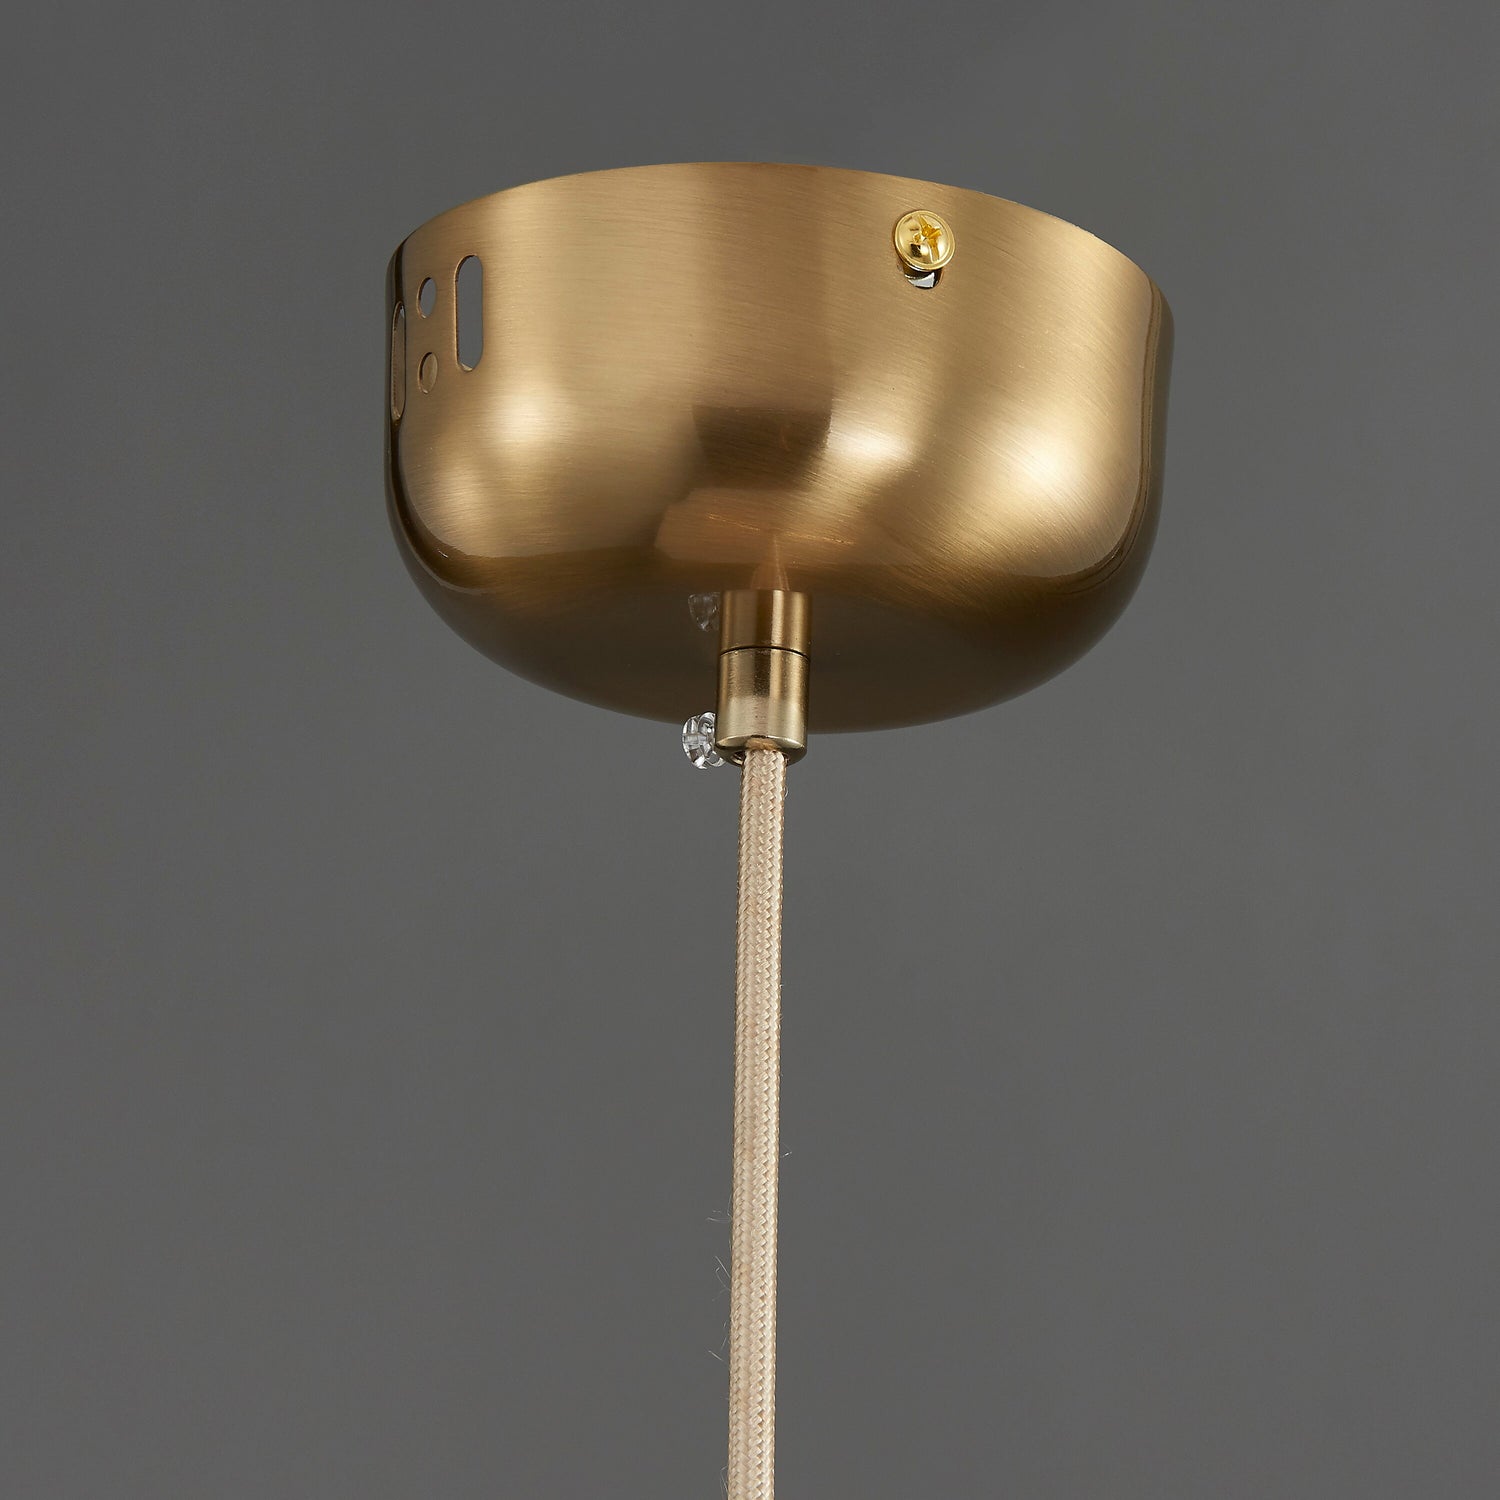 Square Marble Pendant Lamp, Handmade LED Chandelier, Housewarming Gift Brass Light, Art Deco Hanging Lighting MODEL: DUHA